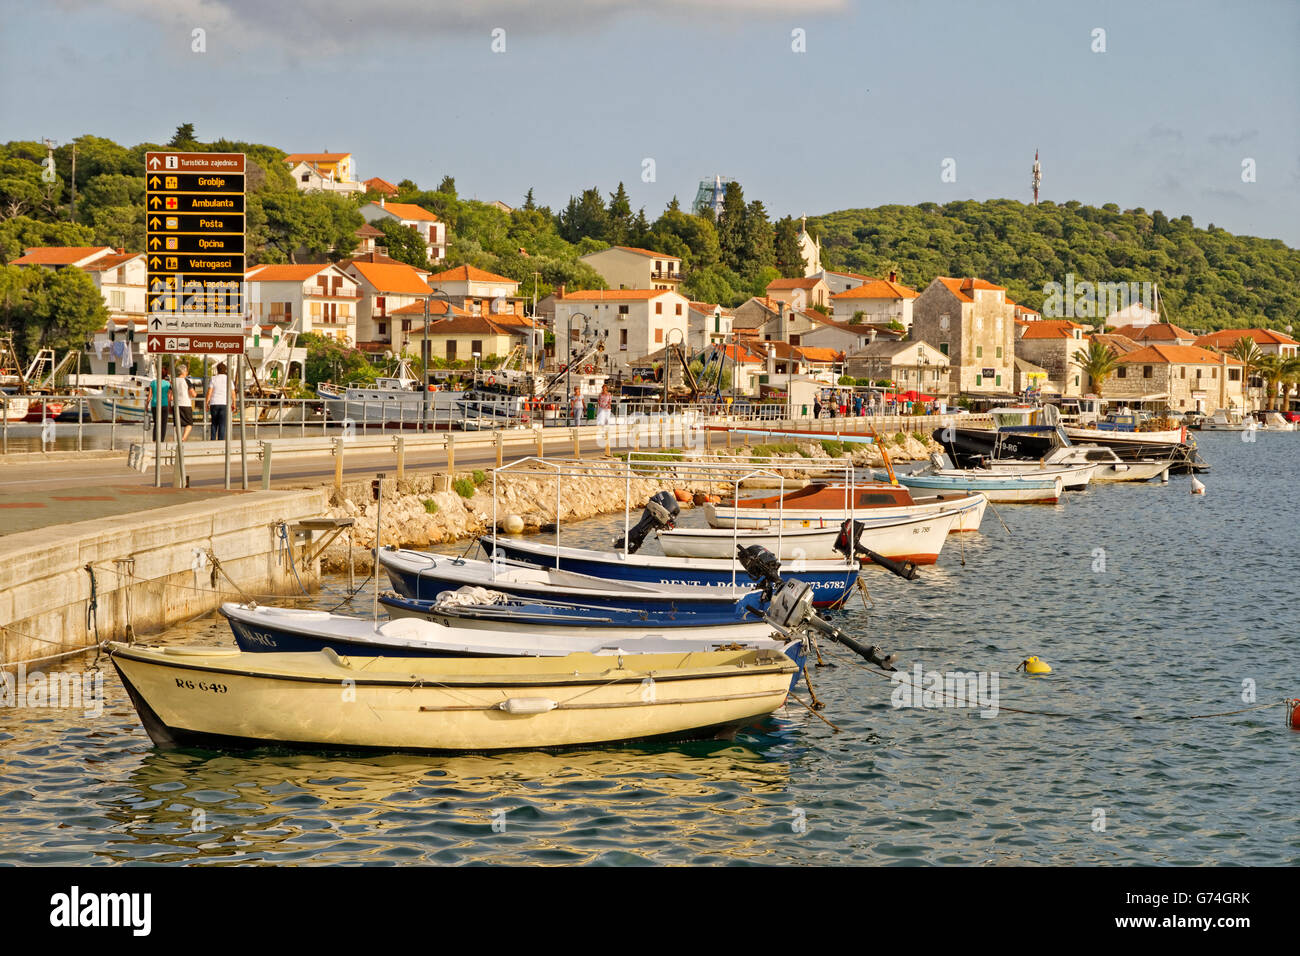 Damm nach Rogoznica Insel, in der Nähe von Split, Kroatien. Stockfoto